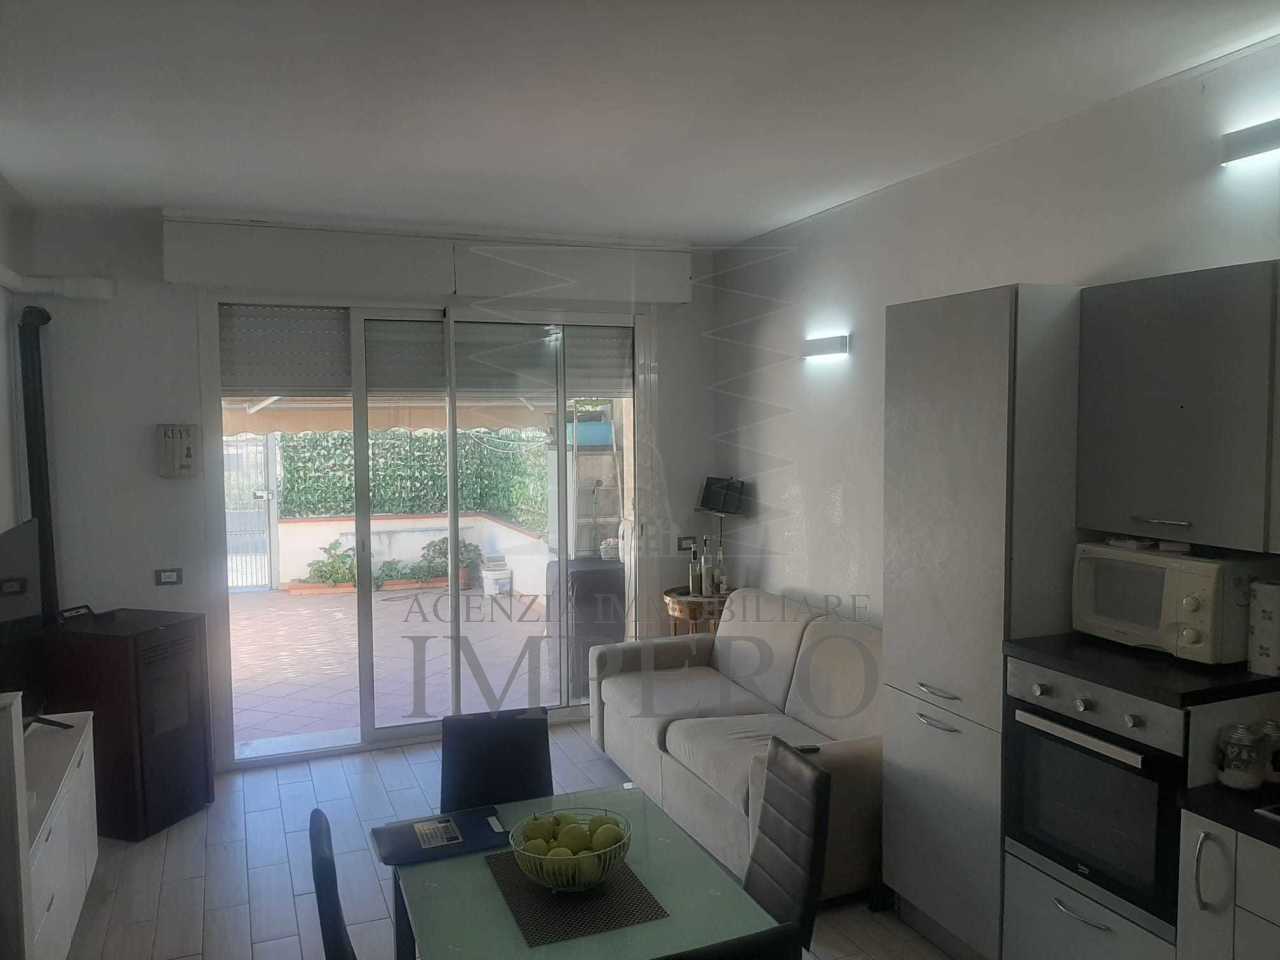 Appartamento in vendita a Ventimiglia, 2 locali, prezzo € 97.000 | PortaleAgenzieImmobiliari.it